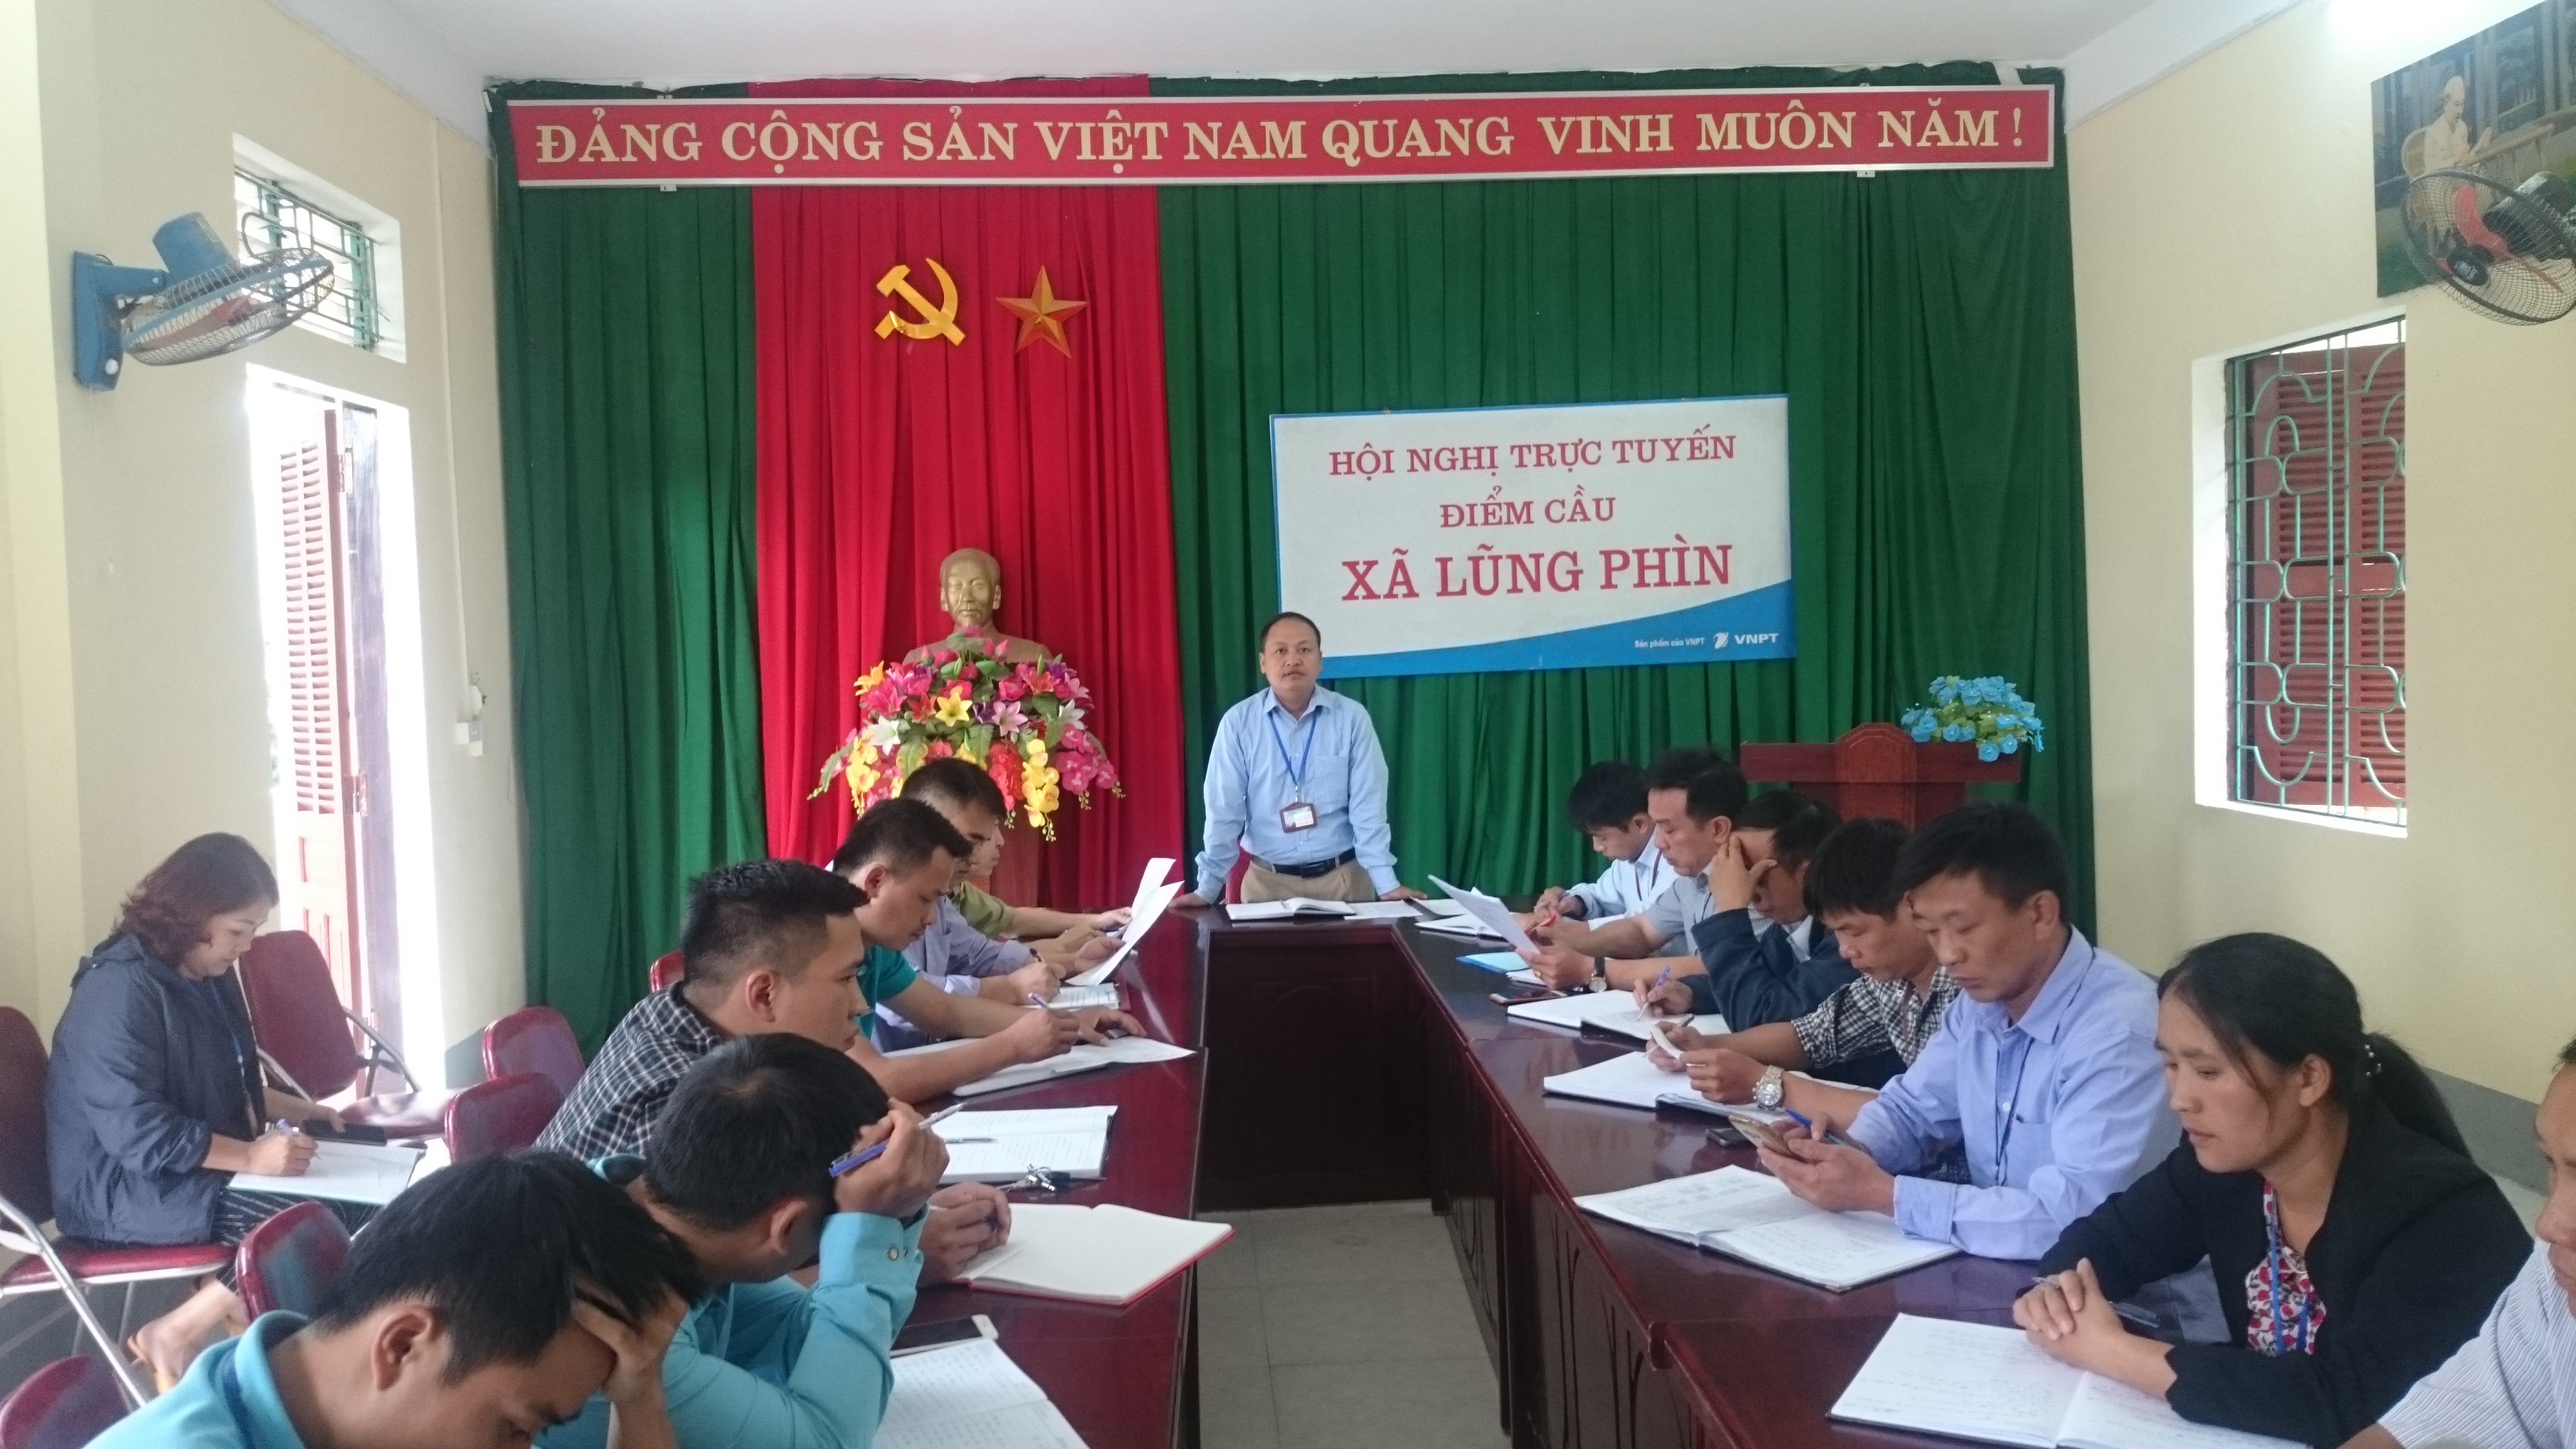 Ban chỉ đạo công tác giáo dục xã Lũng Phìn họp phiên họp tháng 9